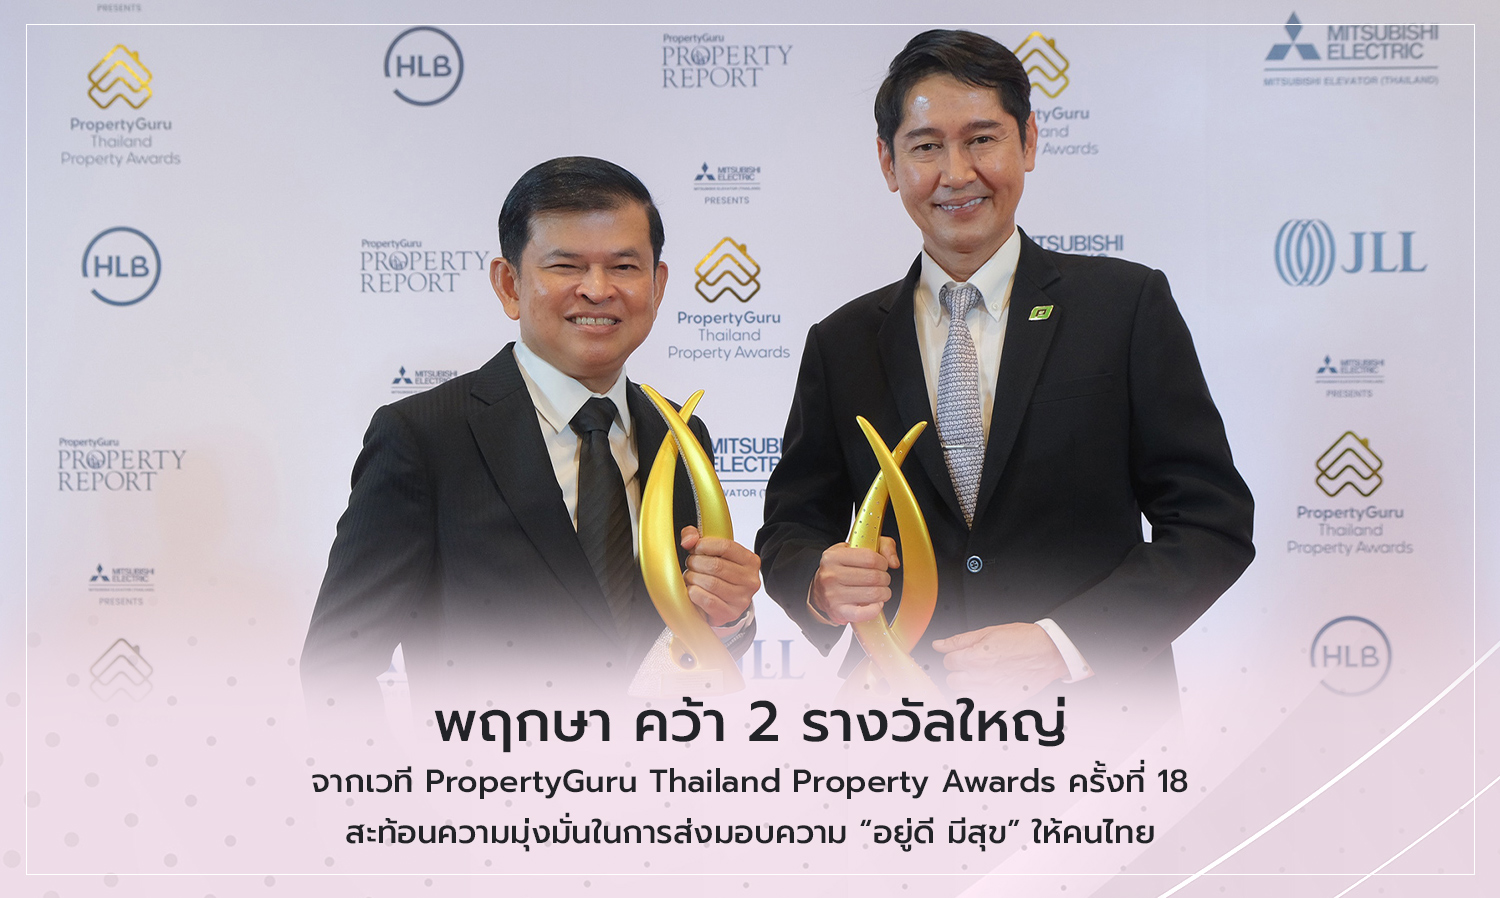 พฤกษา คว้า 2 รางวัลใหญ่จากเวที PropertyGuru Thailand Property Awards ครั้งที่ 18 สะท้อนความมุ่งมั่นในการส่งมอบความ “อยู่ดี มีสุข” ให้คนไทย